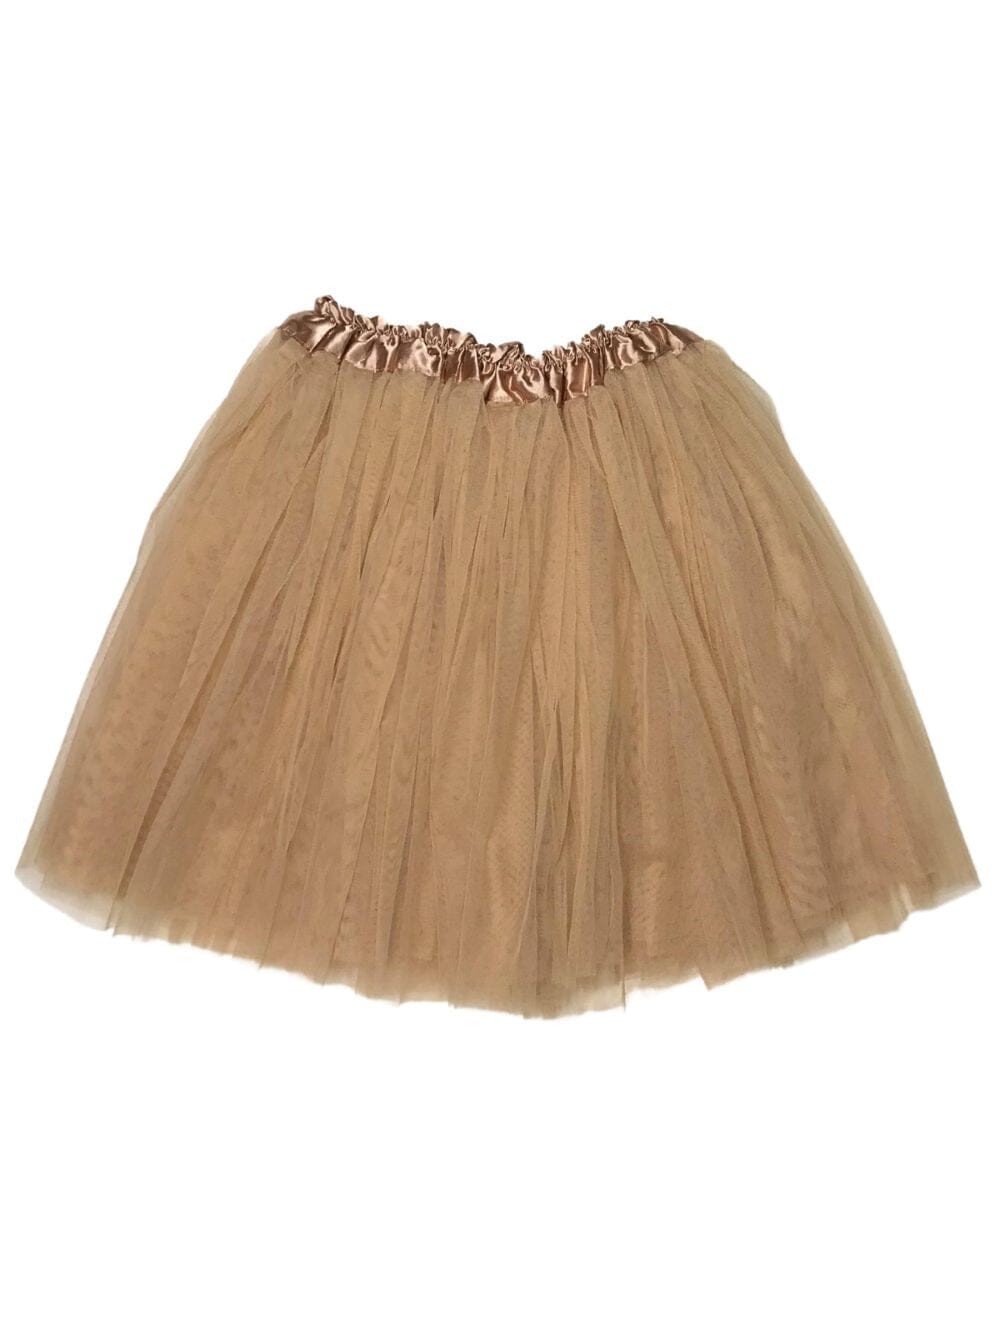 Gold Tulle Girls' Bed Skirt